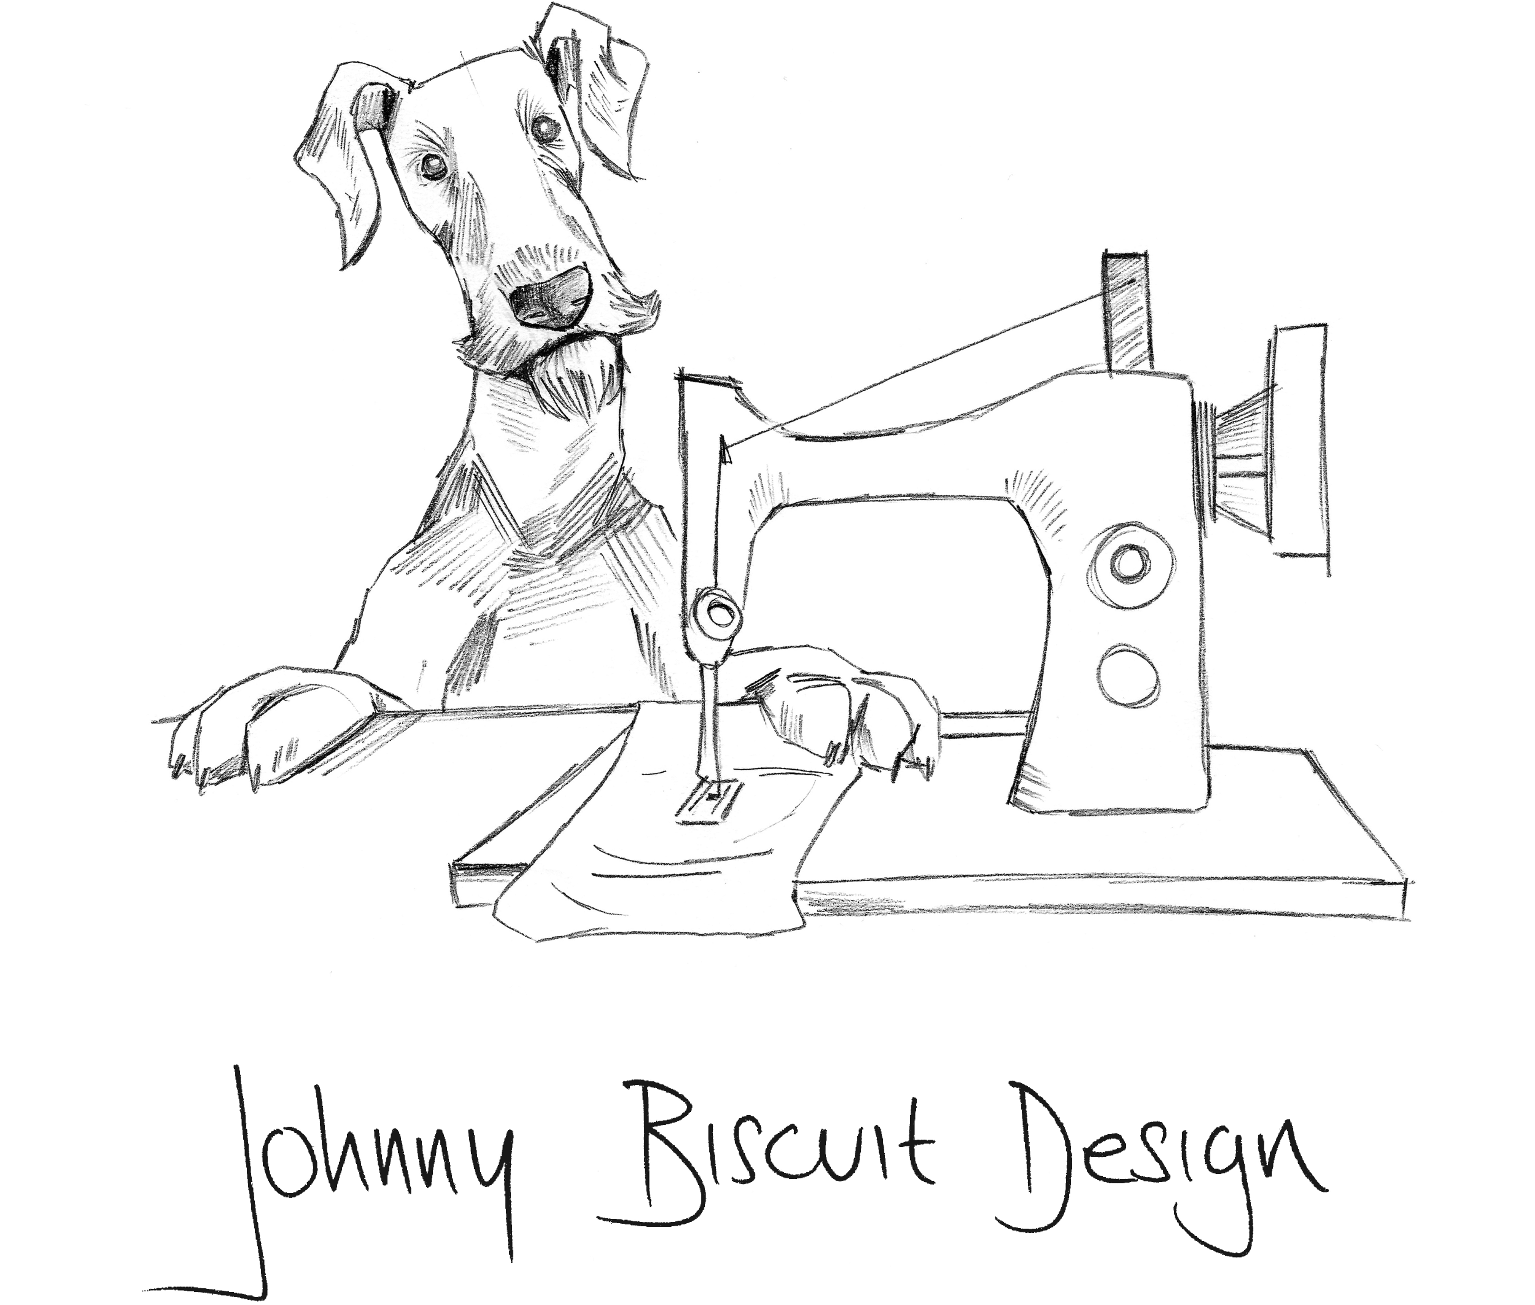 Johnny Biscuit Design